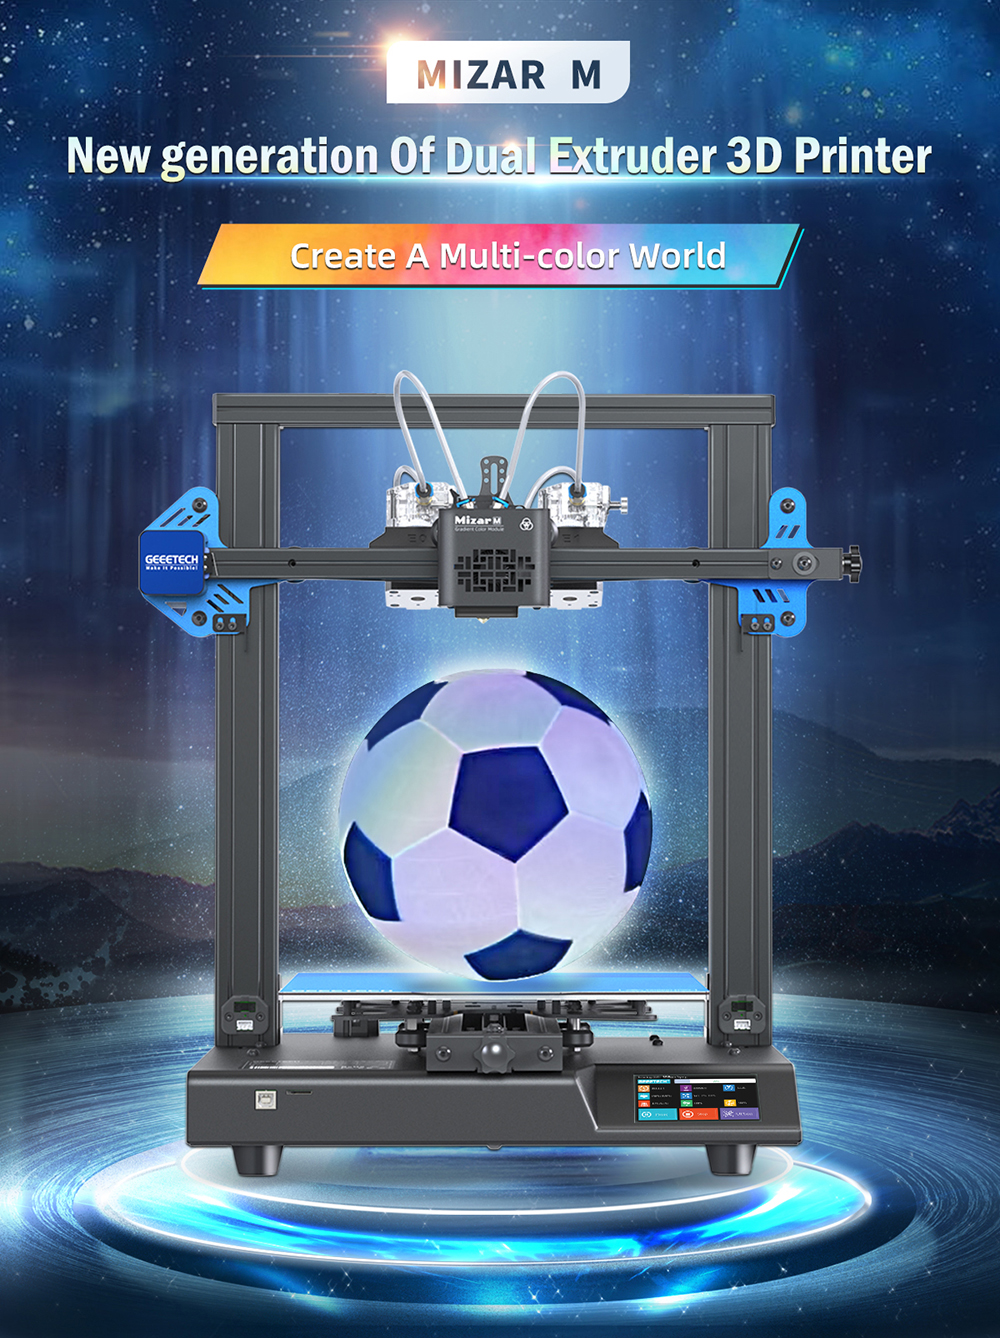 GEEETECH Mizar S Imprimante 3D à nivellement automatique avec double axe Z  silencieux, grande taille d'impression 25,4 x 25,4 x 25,9 cm, micrologiciel  entièrement open source FDM 3D : : Commerce, Industrie